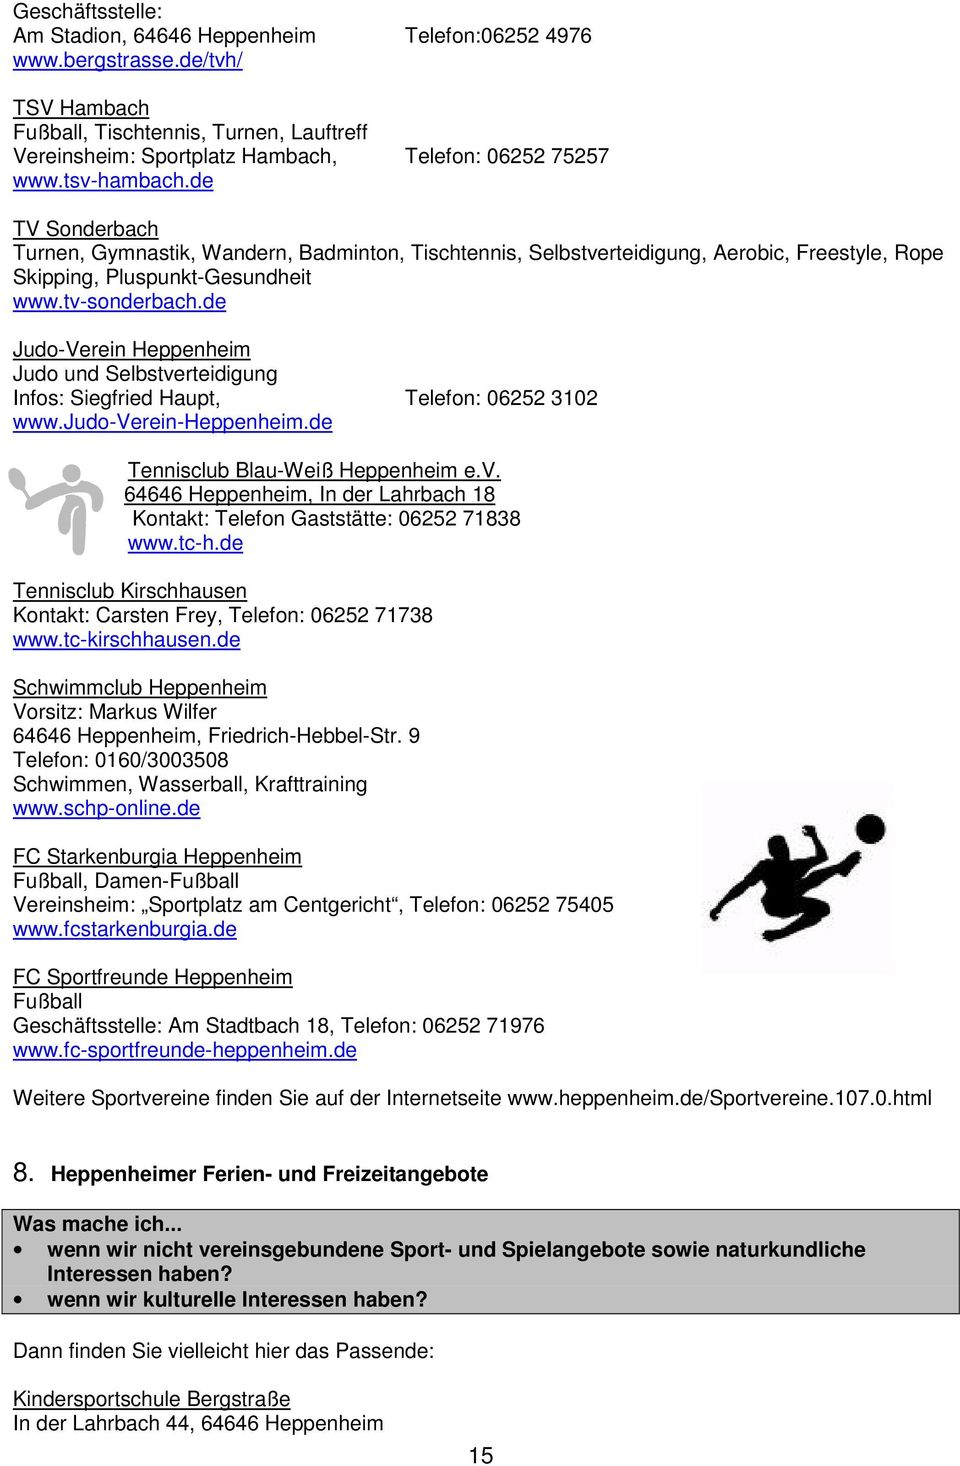 de Judo-Verein Heppenheim Judo und Selbstverteidigung Infos: Siegfried Haupt, Telefon: 06252 3102 www.judo-verein-heppenheim.de Tennisclub Blau-Weiß Heppenheim e.v. 64646 Heppenheim, In der Lahrbach 18 Kontakt: Telefon Gaststätte: 06252 71838 www.